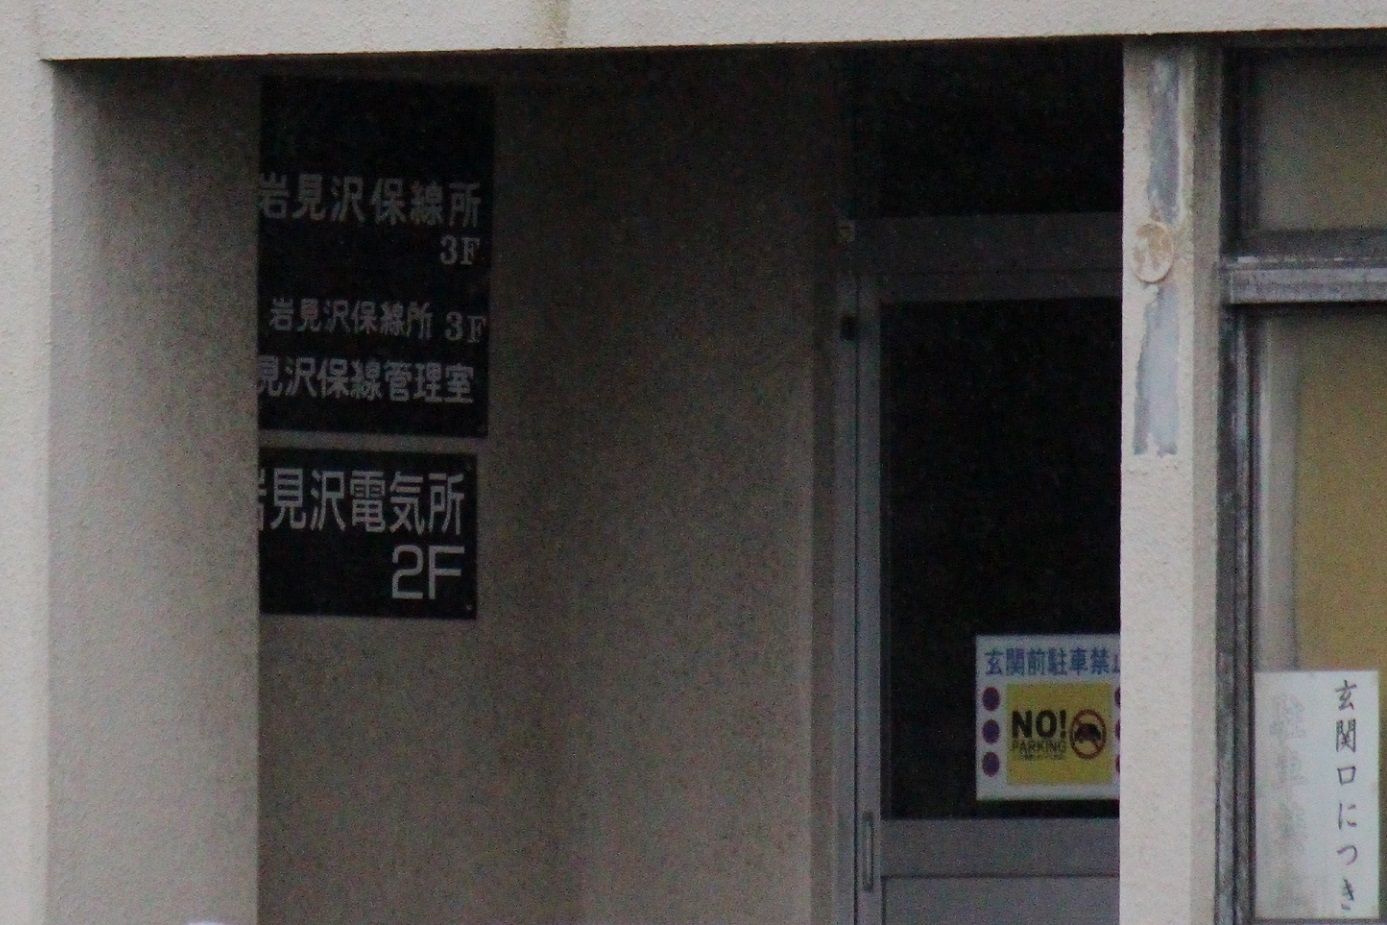 岩見沢駅本屋信号扱所a13